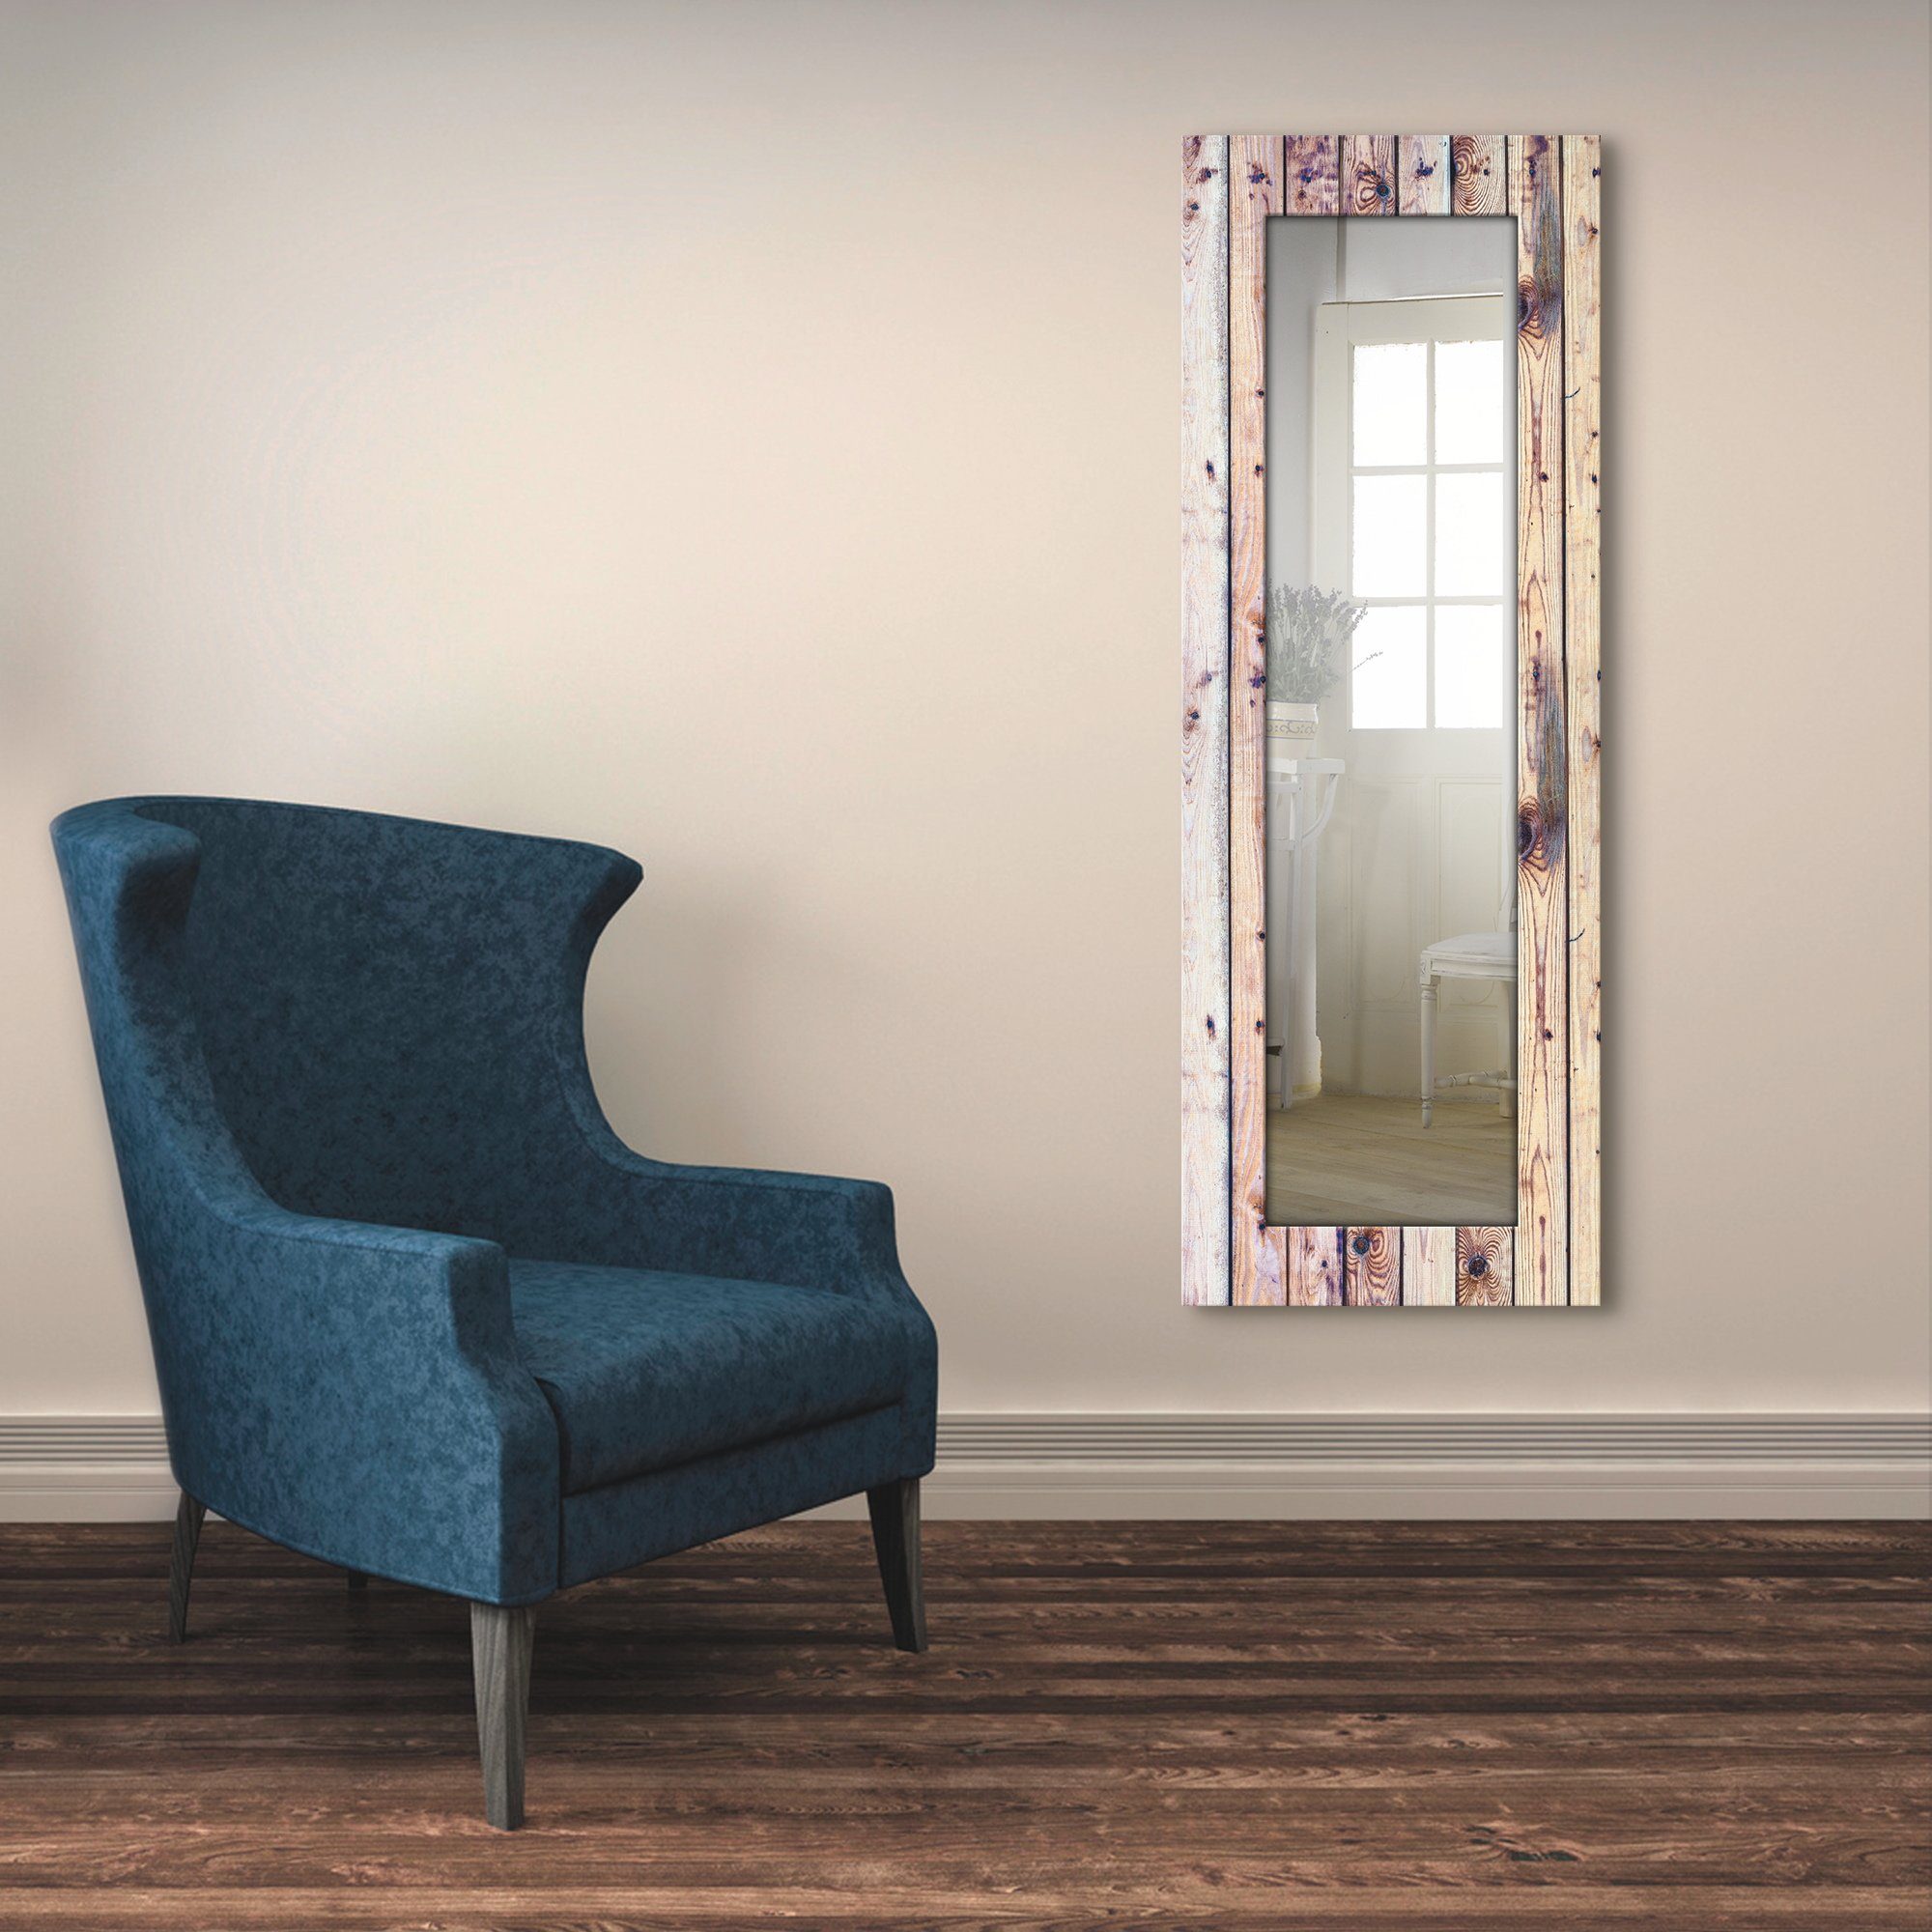 Artland Sierspiegel Witte vintage-achtergrond ingelijste spiegel voor het hele lichaam met motiefrand, geschikt voor kleine, smalle hal, halspiegel, mirror spiegel omrand om op te